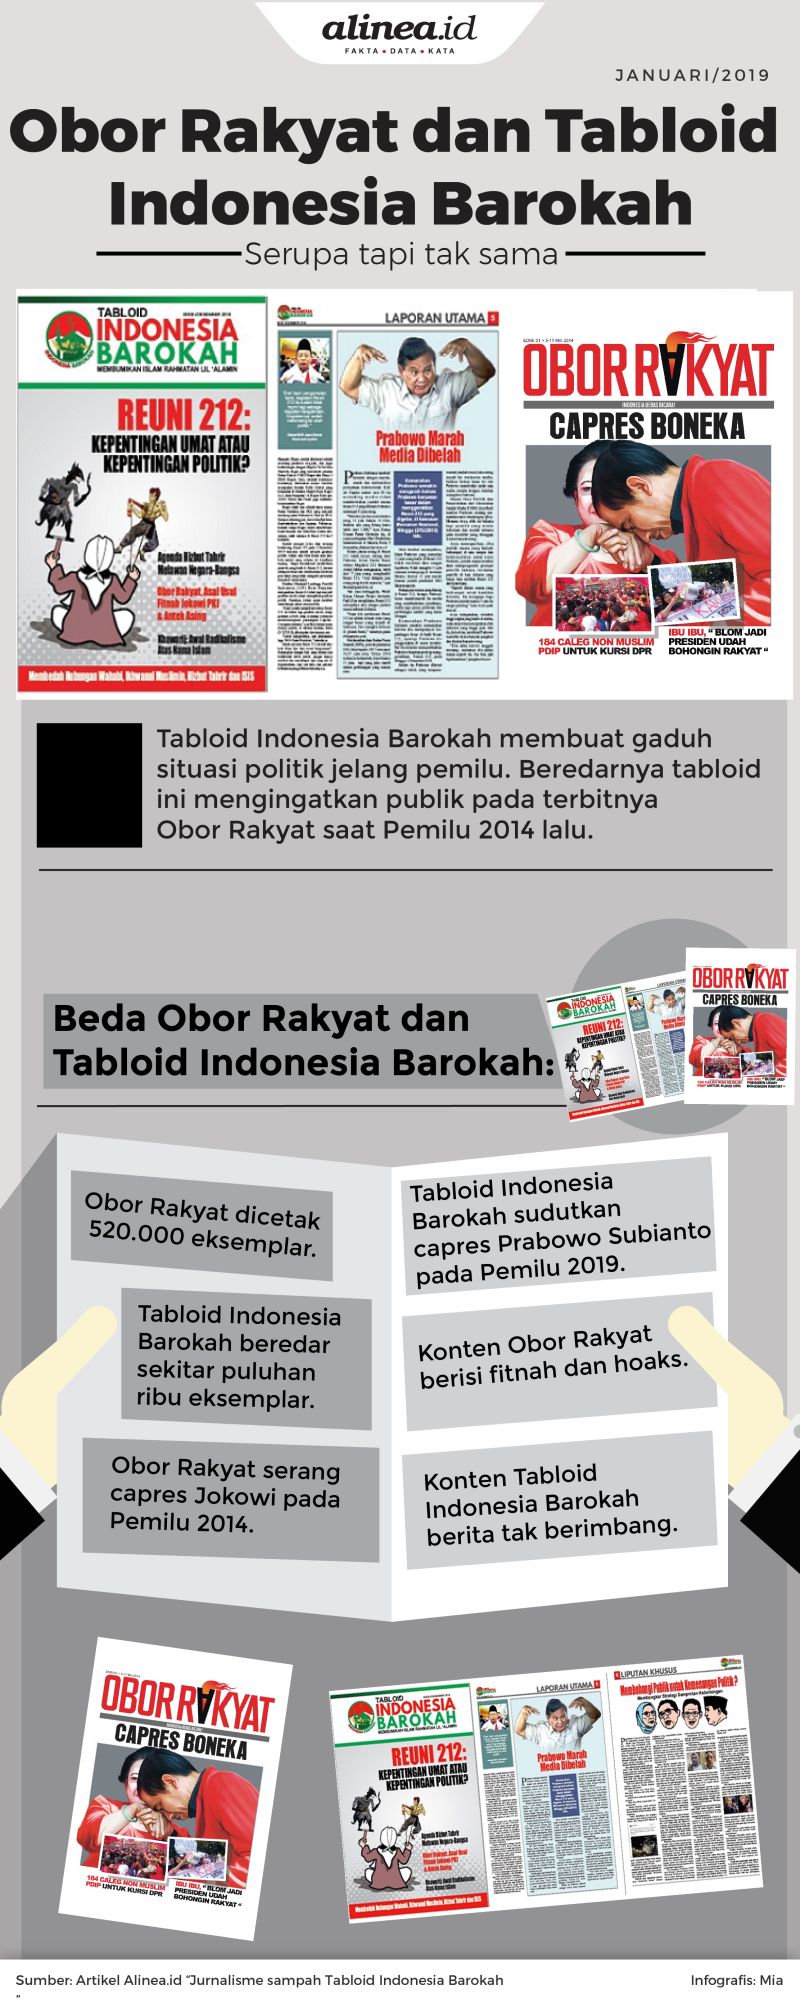 Tabloid Indonesia Barokah mengingatkan publik pada terbitnya Obor Rakyat. 